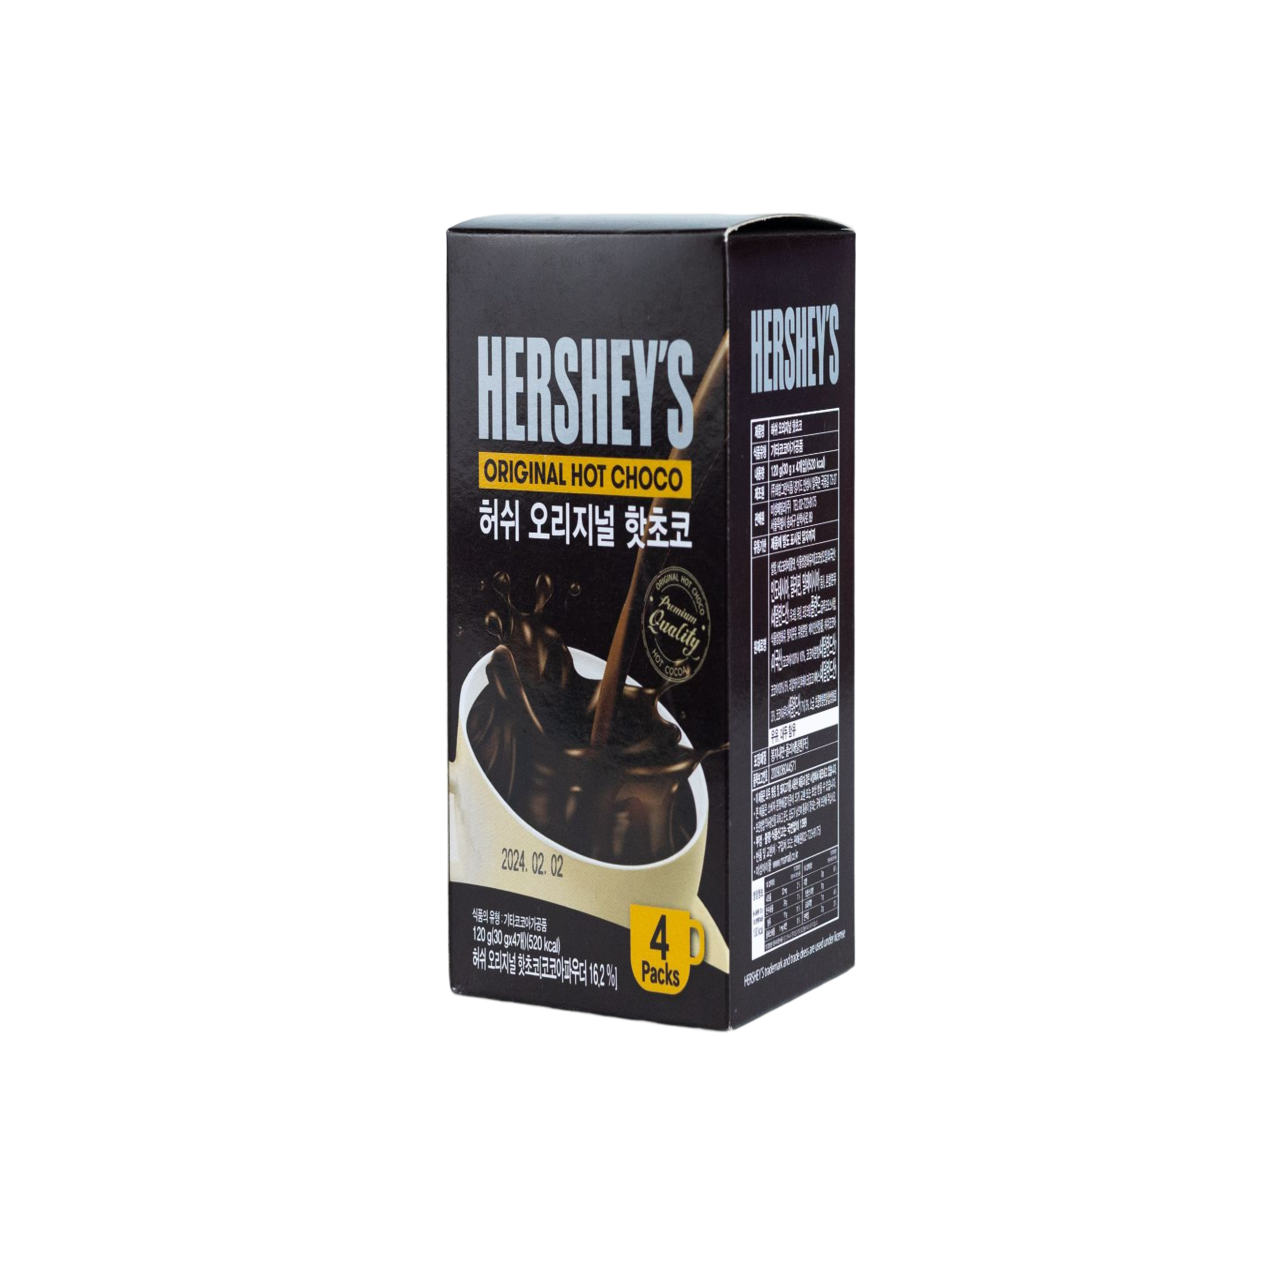 Hershey's Original Hot Chocolate